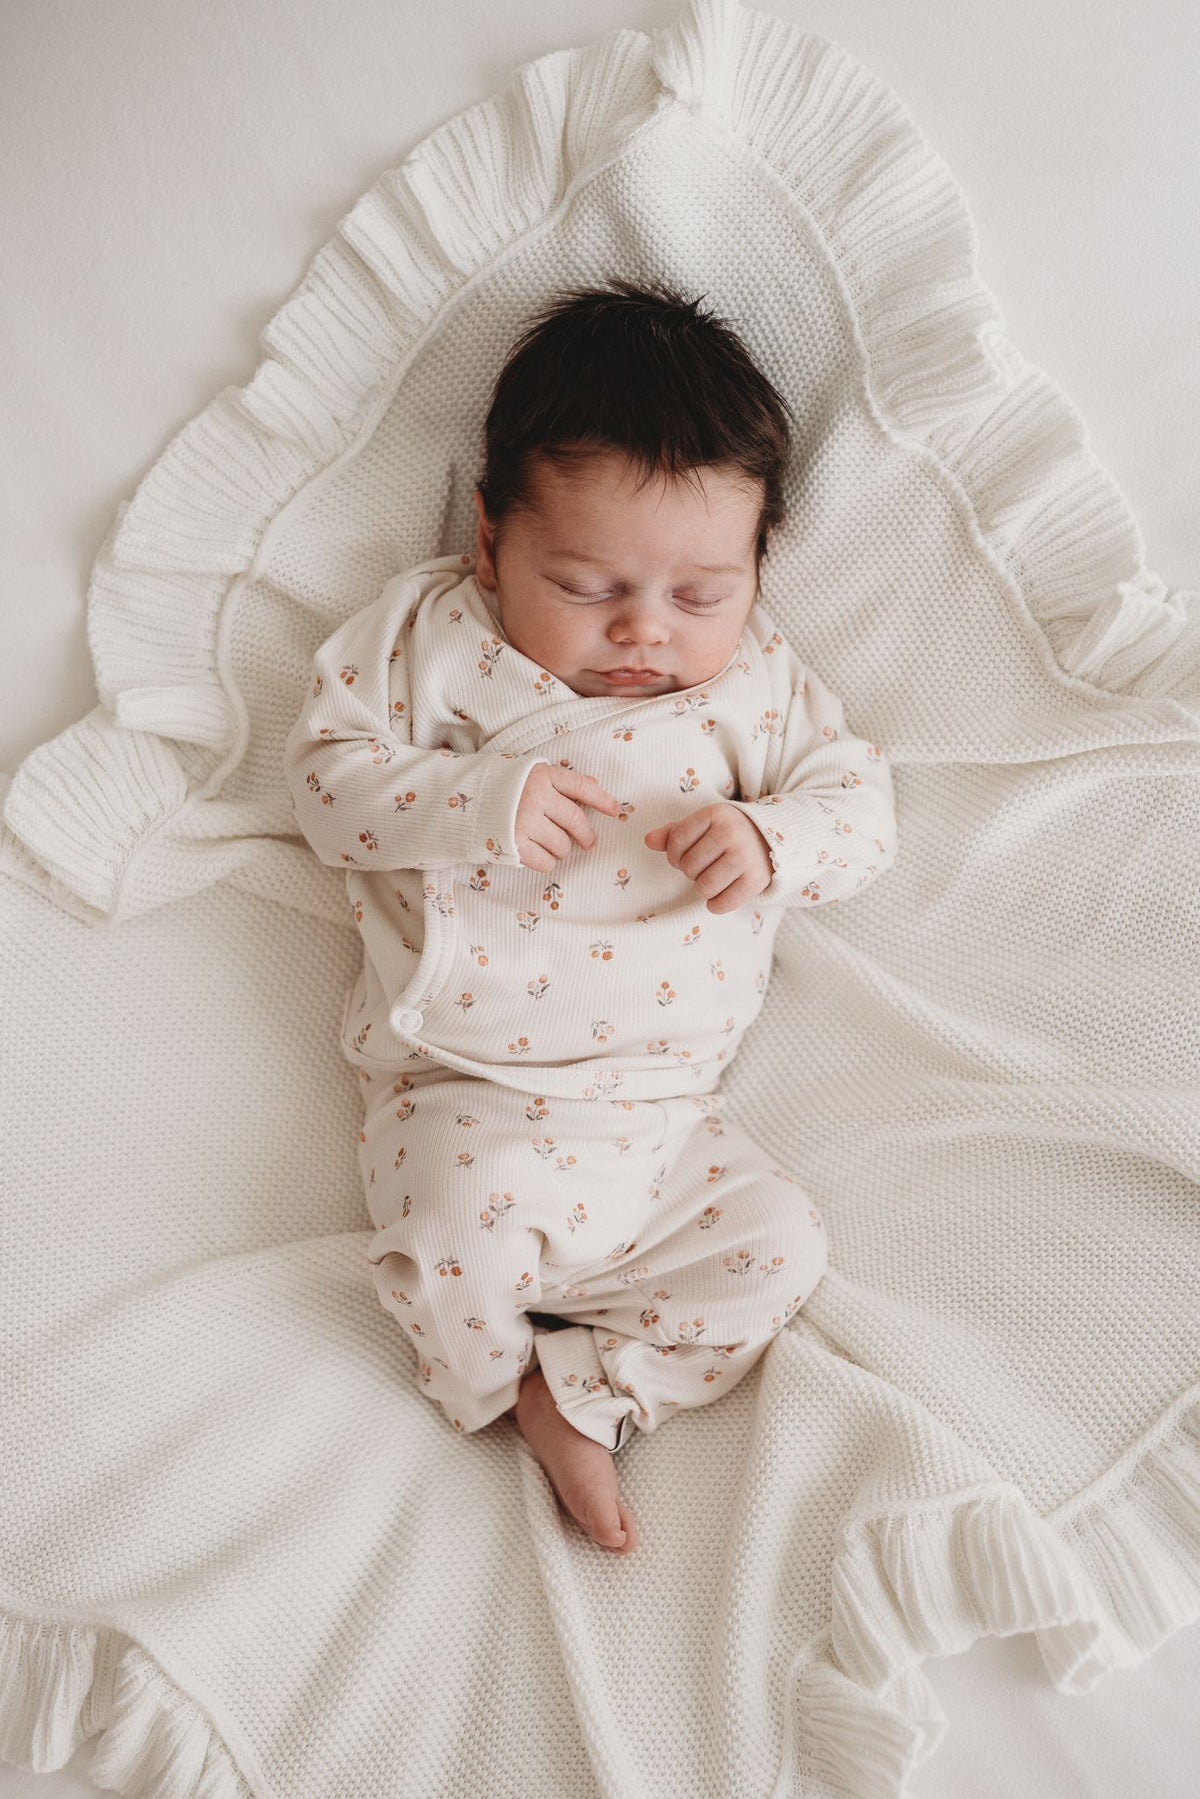 Een vredige pasgeboren baby die slaapt, gekleed in een schattig bedrukt Yumi Baby Broekje Peach Blossom onesie en bijpassend hoedje, liggend op een zacht wit oppervlak met de armen zachtjes omhoog bij het gezicht.